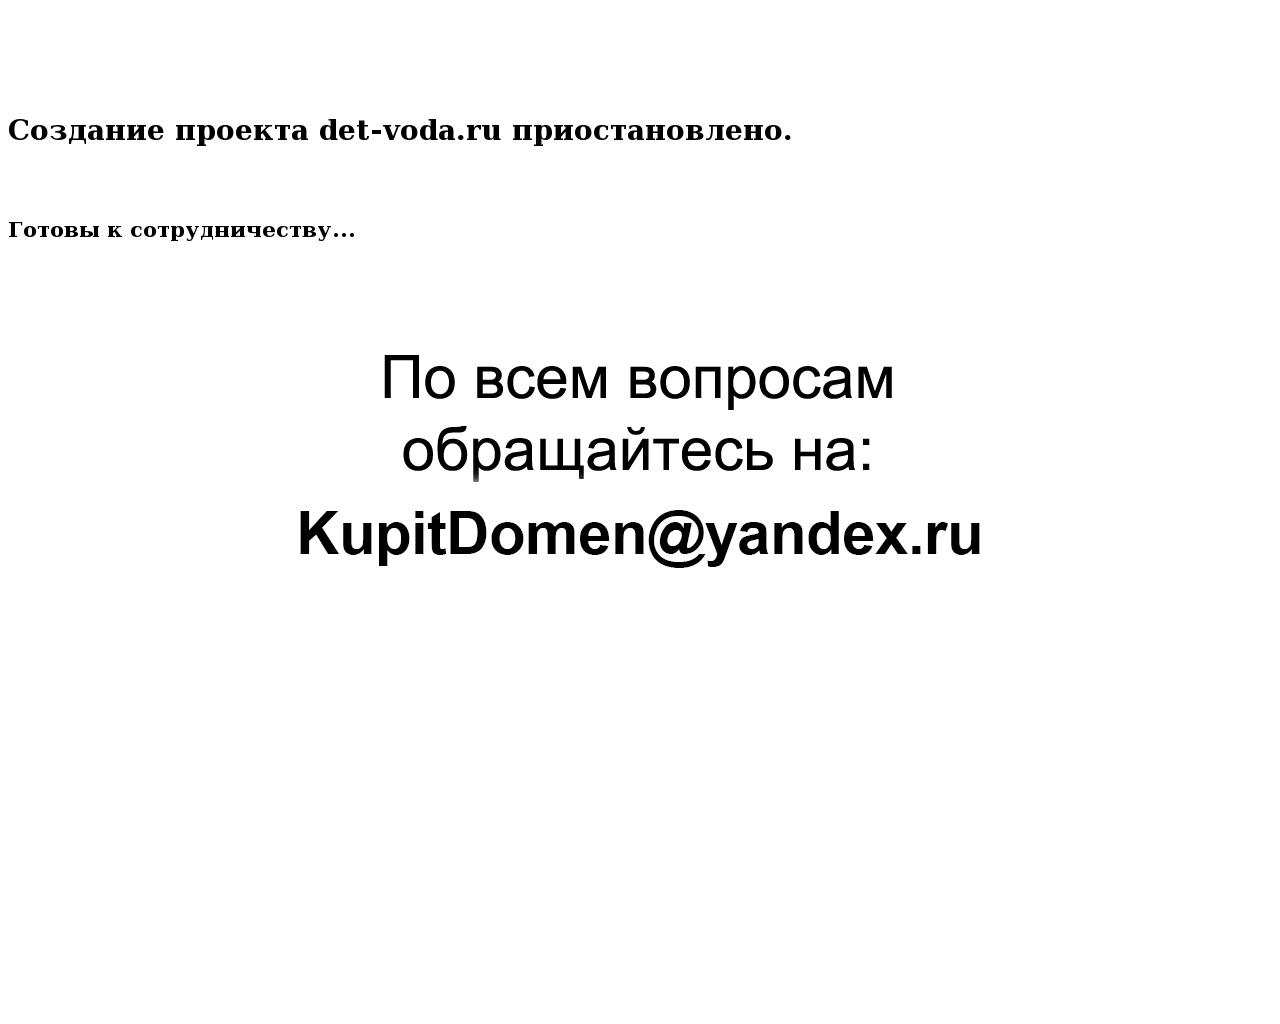 Изображение сайта det-voda.ru в разрешении 1280x1024